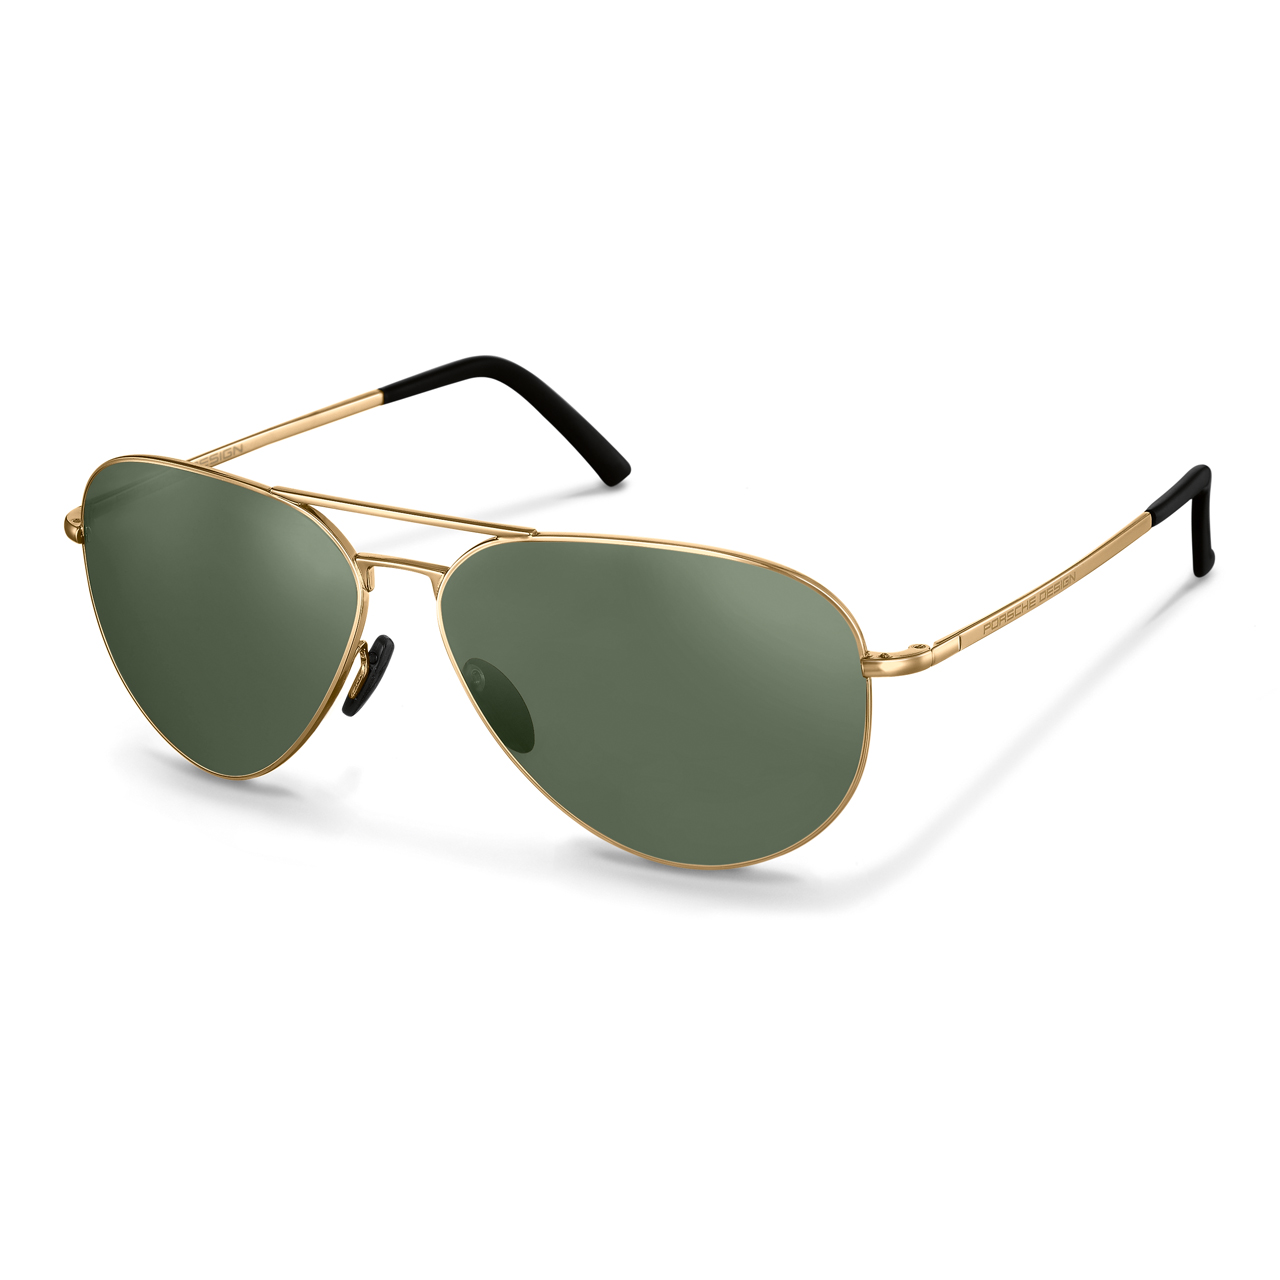 Sunglasses - Stylish Aviator Sunglasses for Men | Porsche Porsche Design